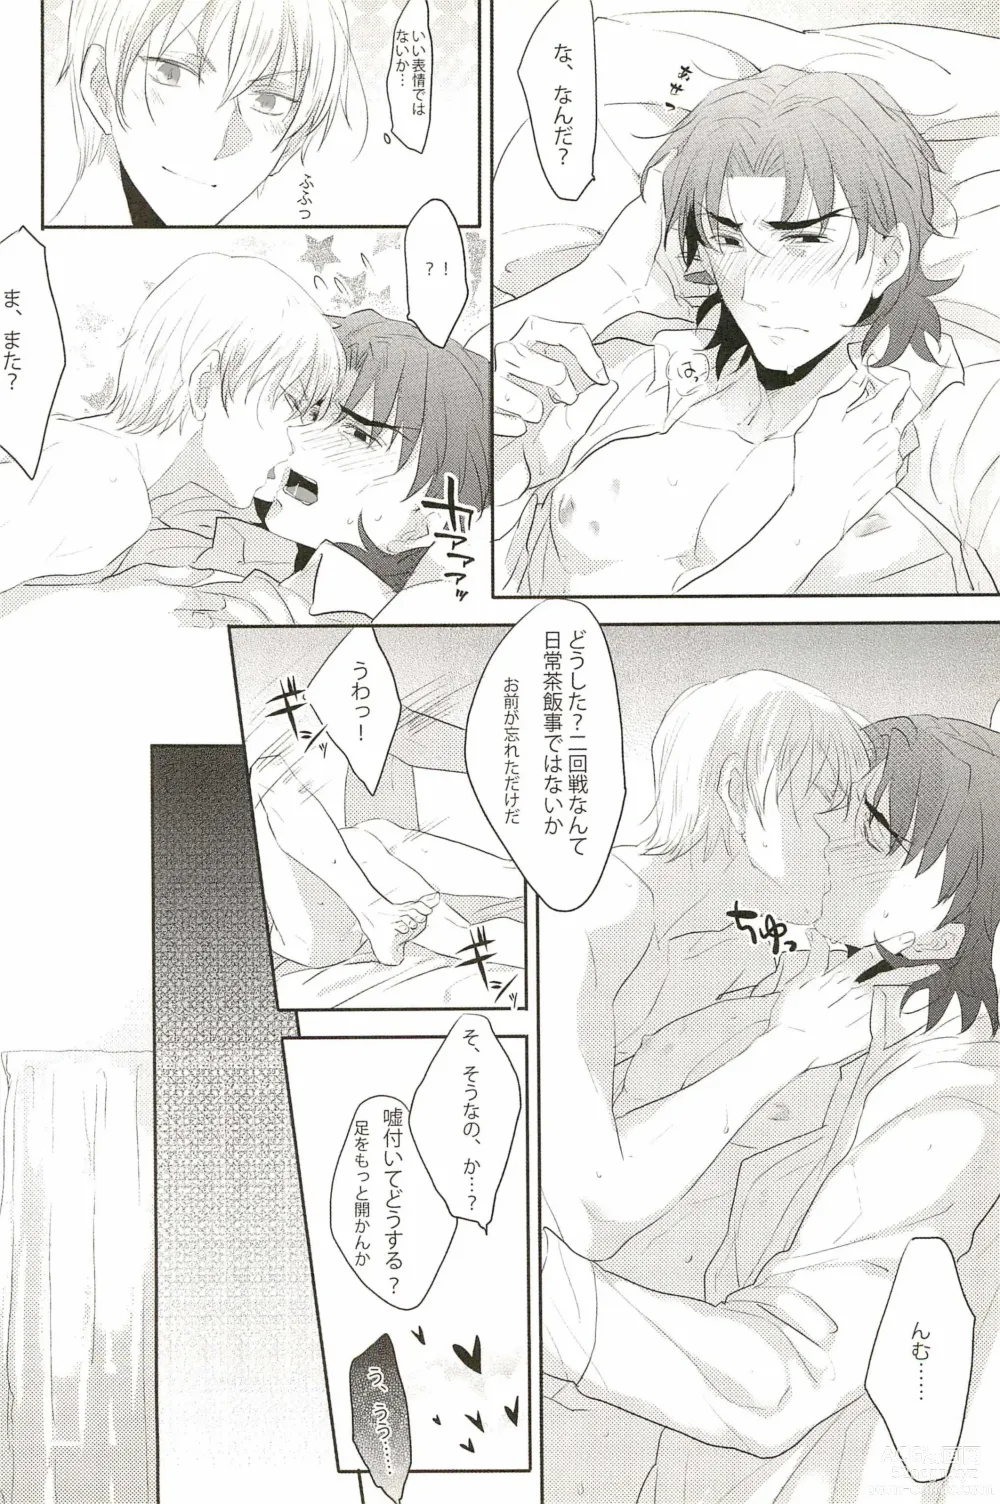 Page 28 of doujinshi Warera Dosei Shite Iru.